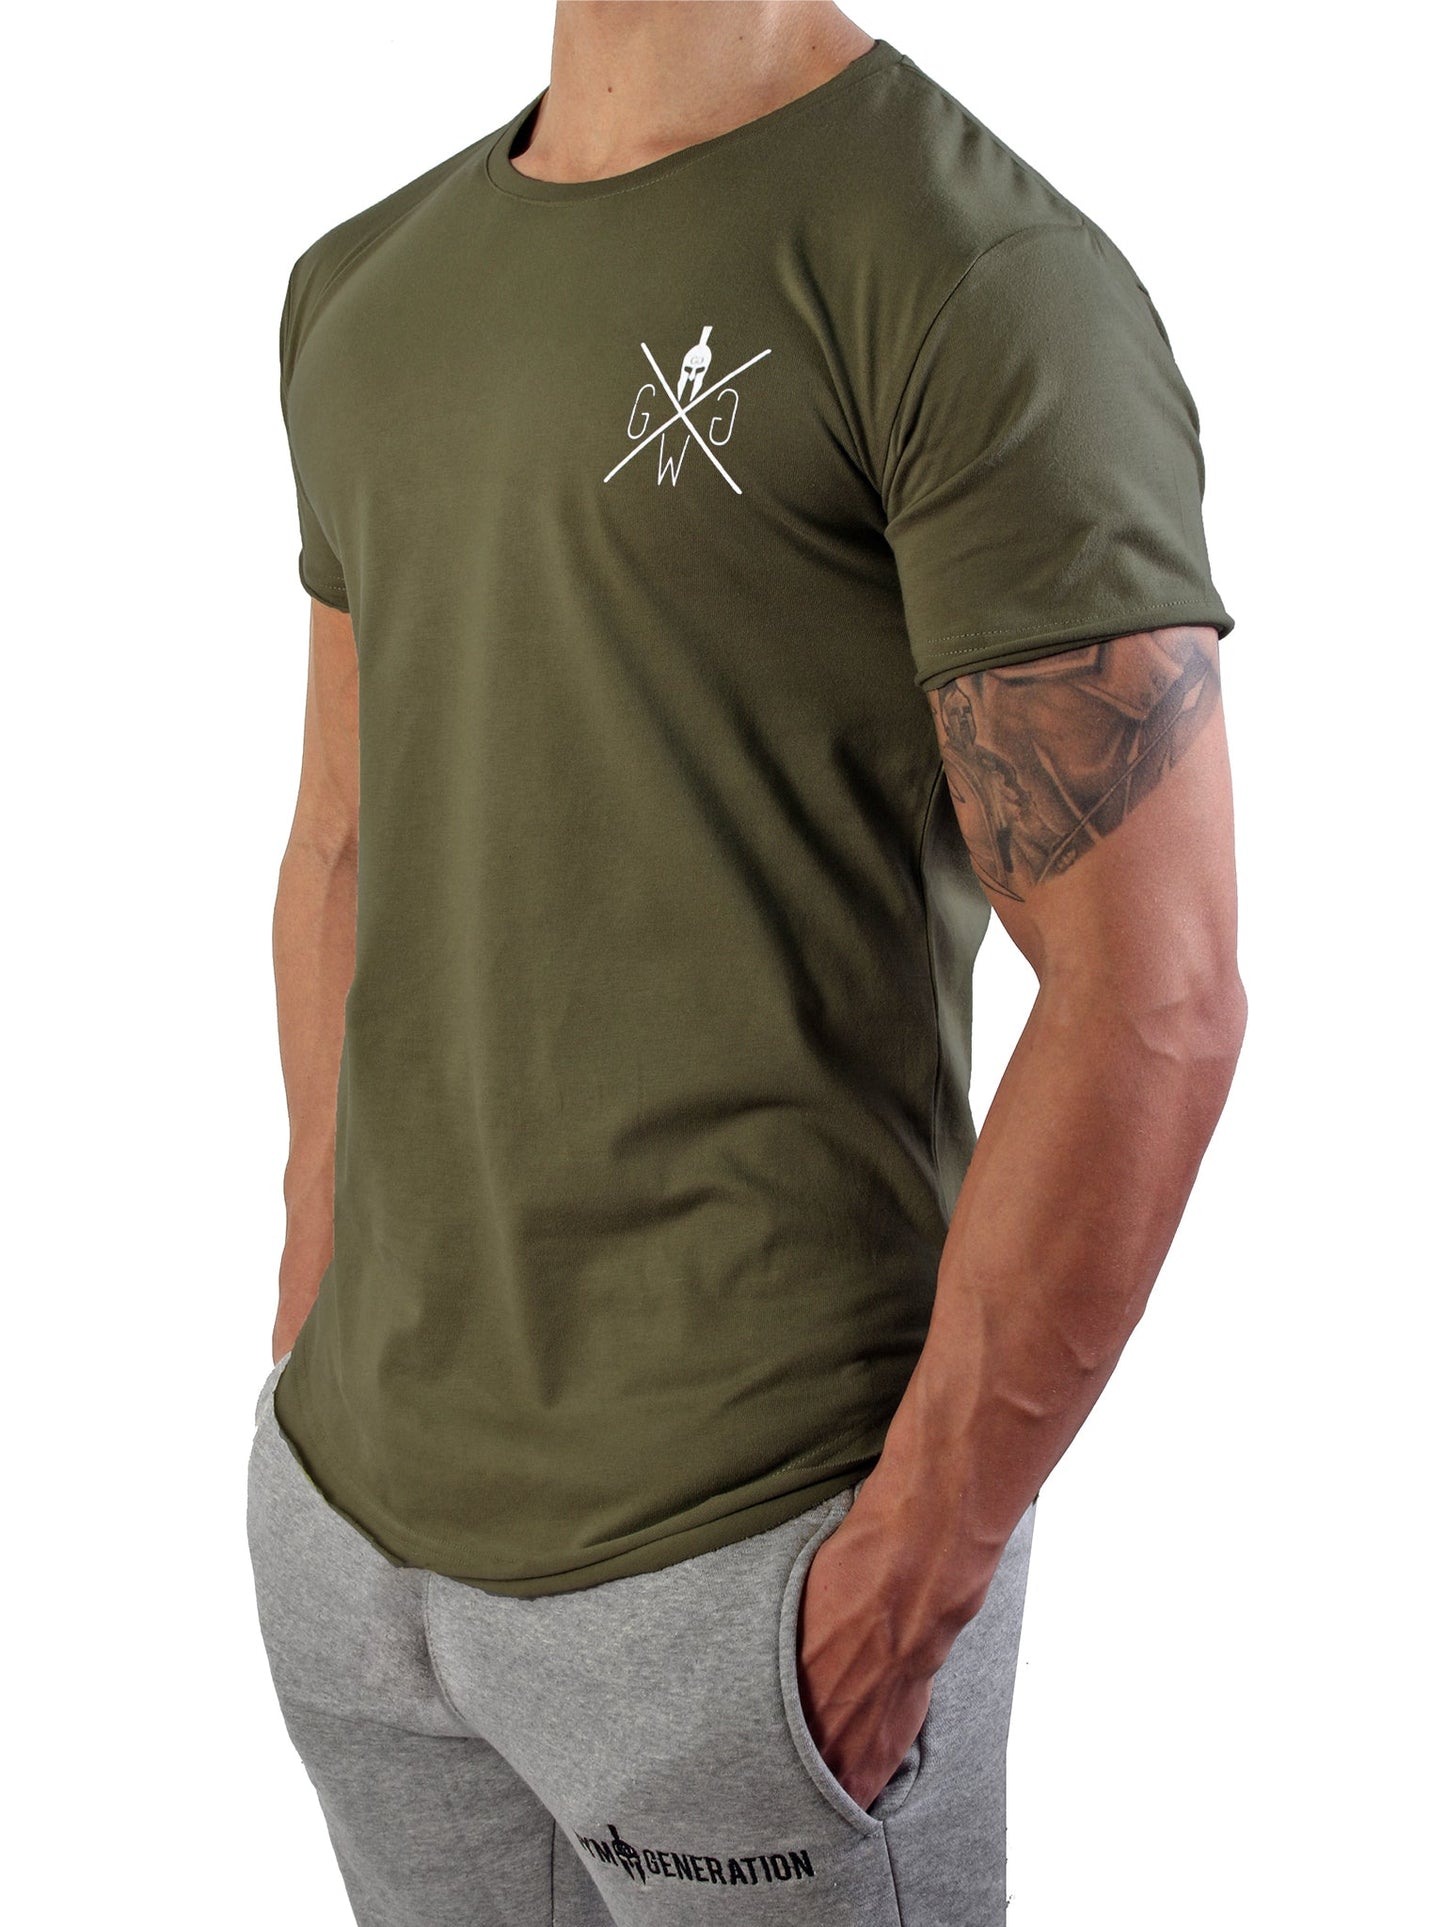 Sportliches Valhalla T-Shirt in Olive von Gym Generation, zeigt deine Leidenschaft für Training und Stil.